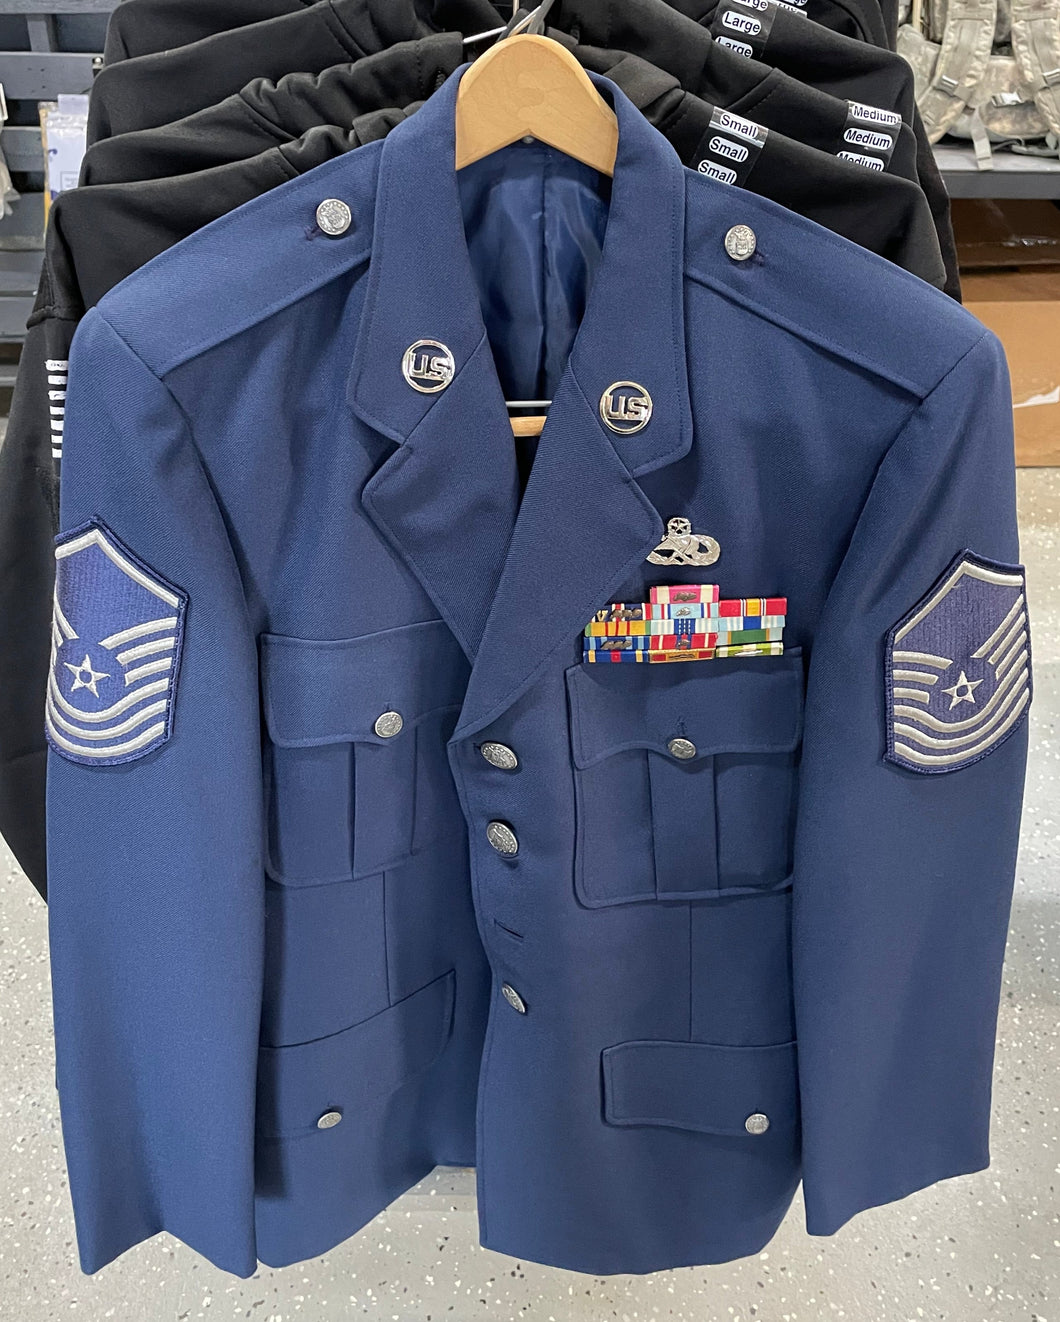 FRONT VIEW USAF DRESS BLUE JACKET